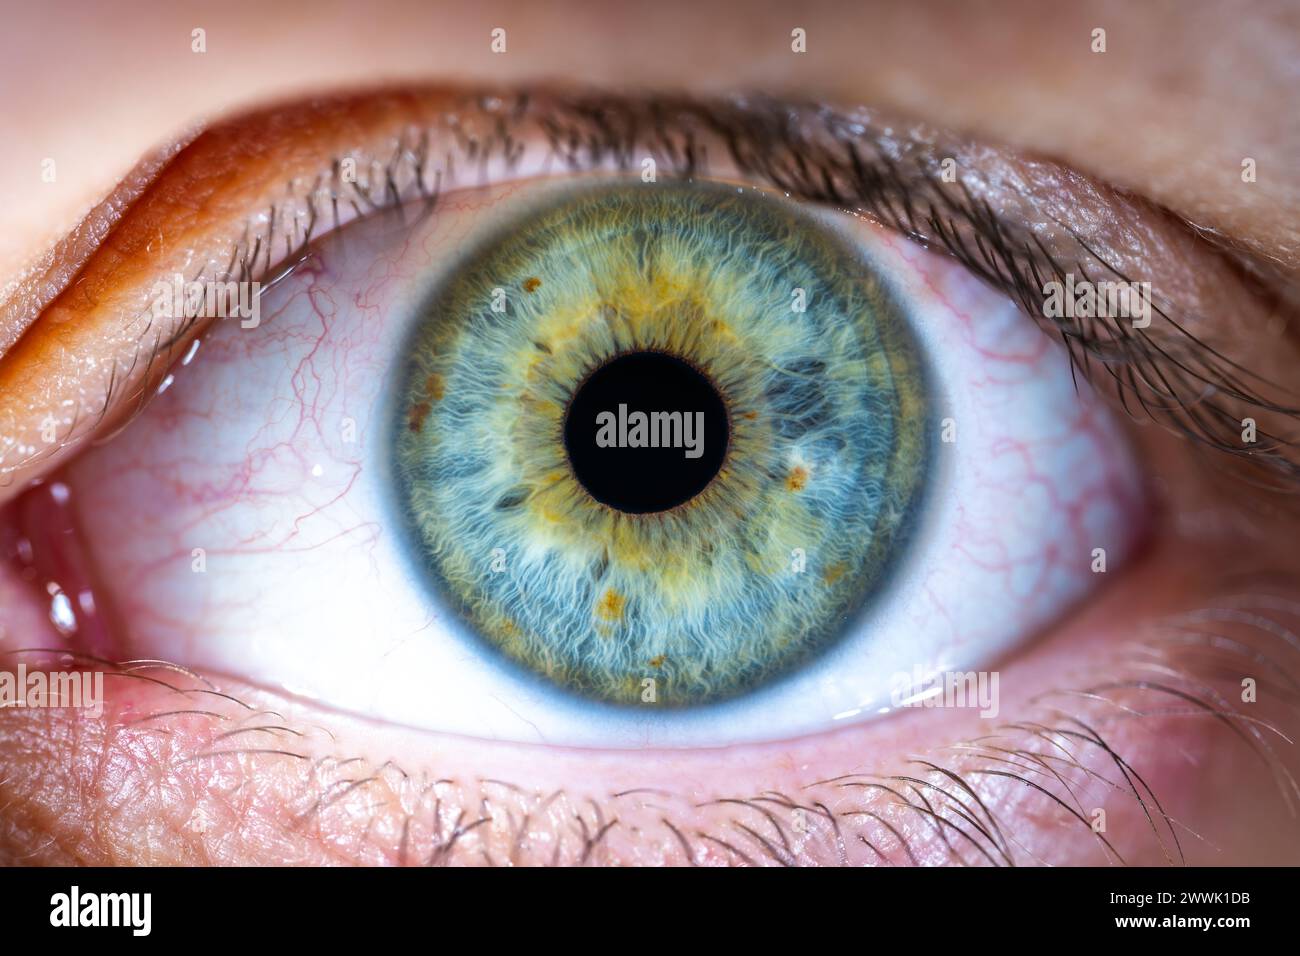 Beschreibung: Weibliches blau-grünes Auge mit braunen Pigmentflecken. Pupille Geöffnet. Nahaufnahme. Strukturelle Anatomie. Makrodetails Für Menschliche Blende. Stockfoto